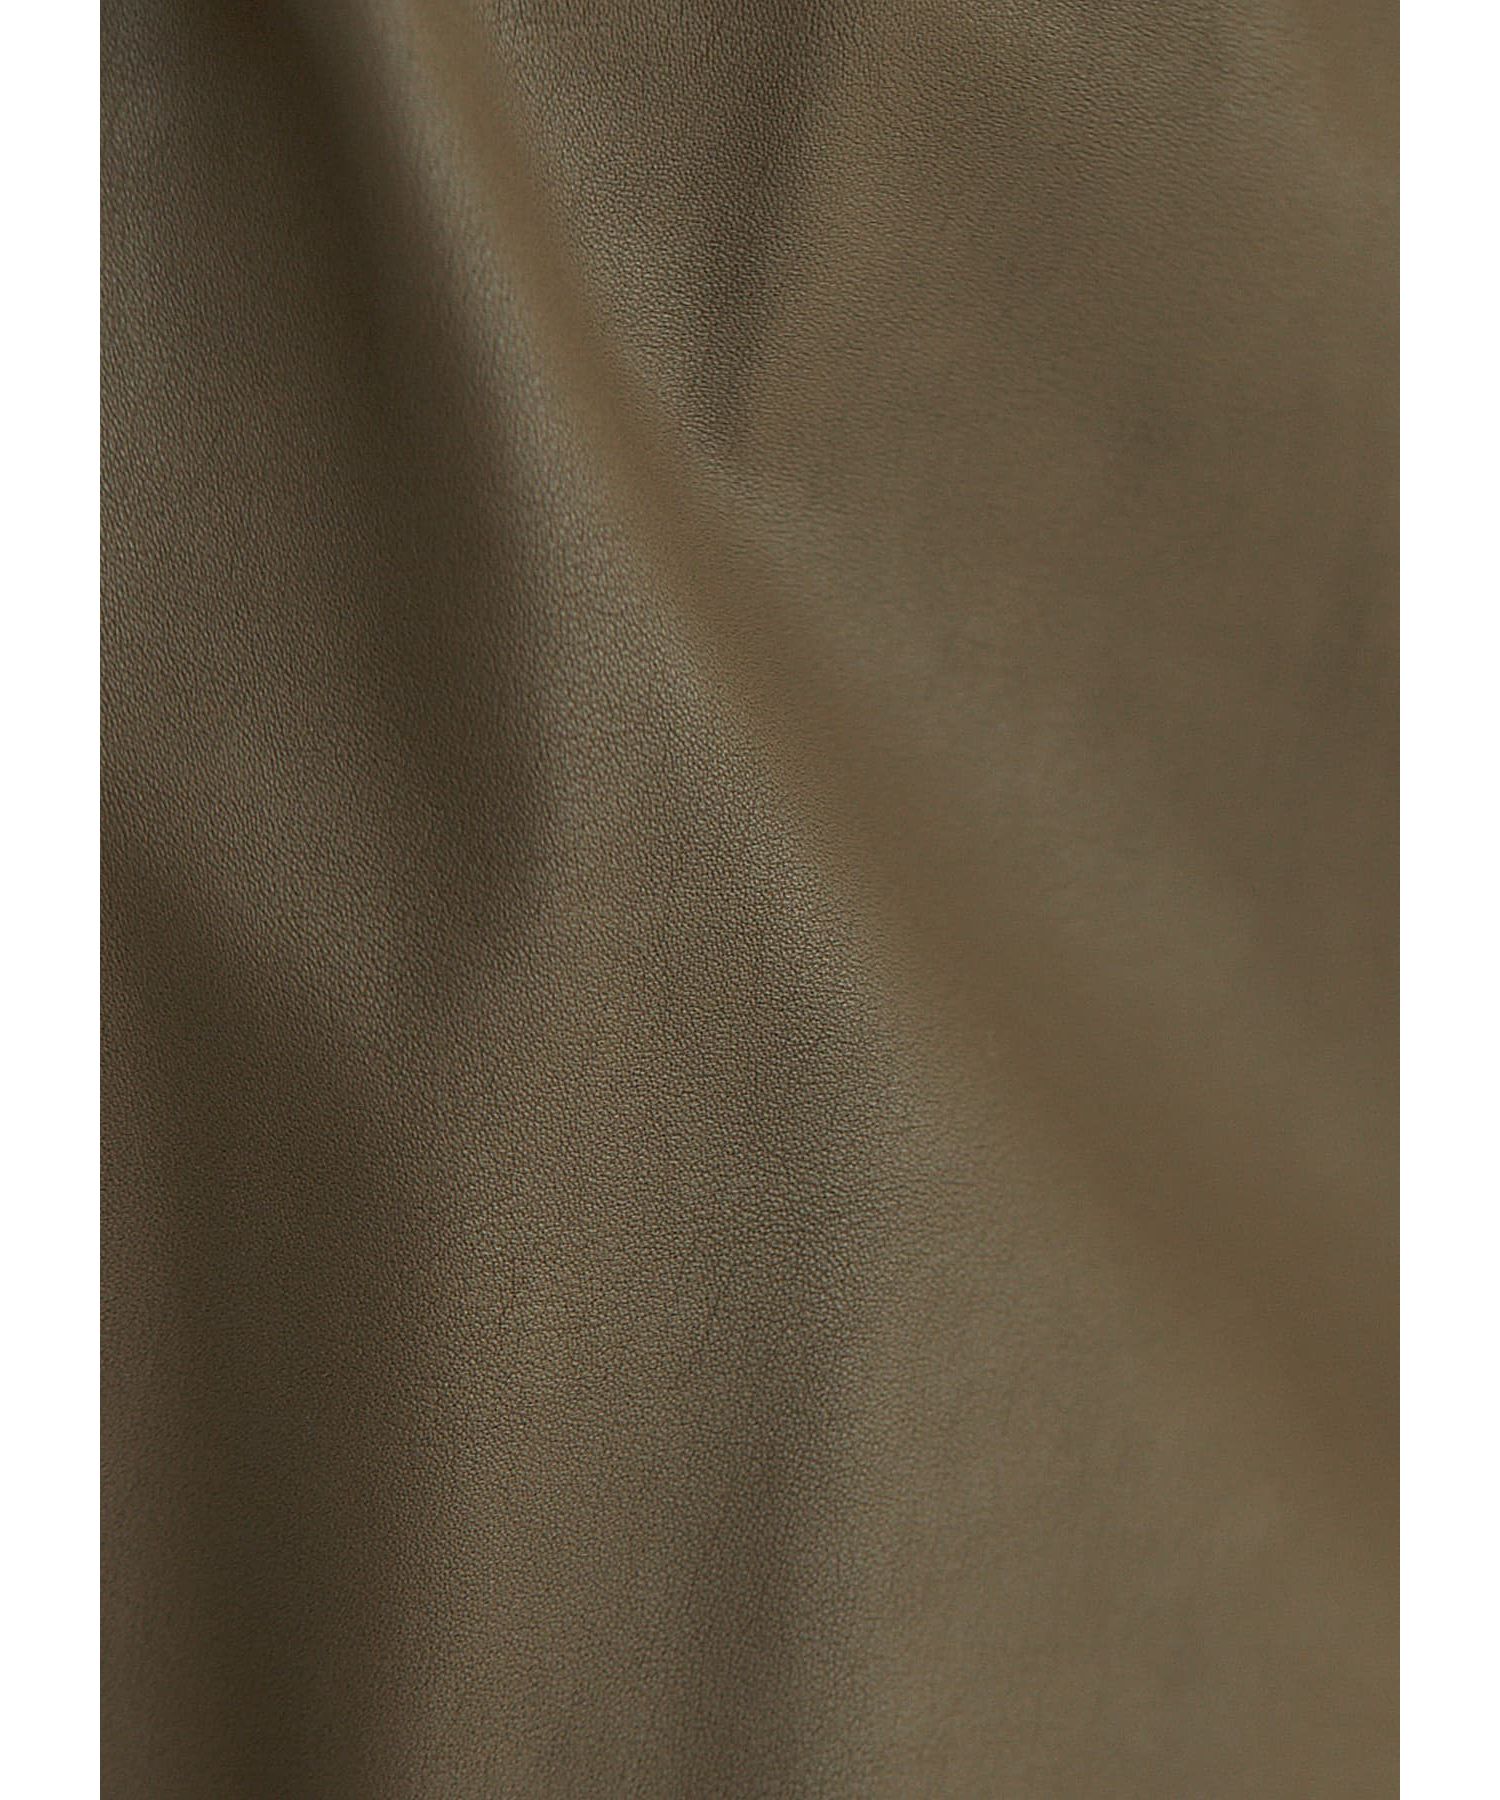 肩シャーリングレザー調ジャンパースカート|STYLE DELI(スタイルデリ